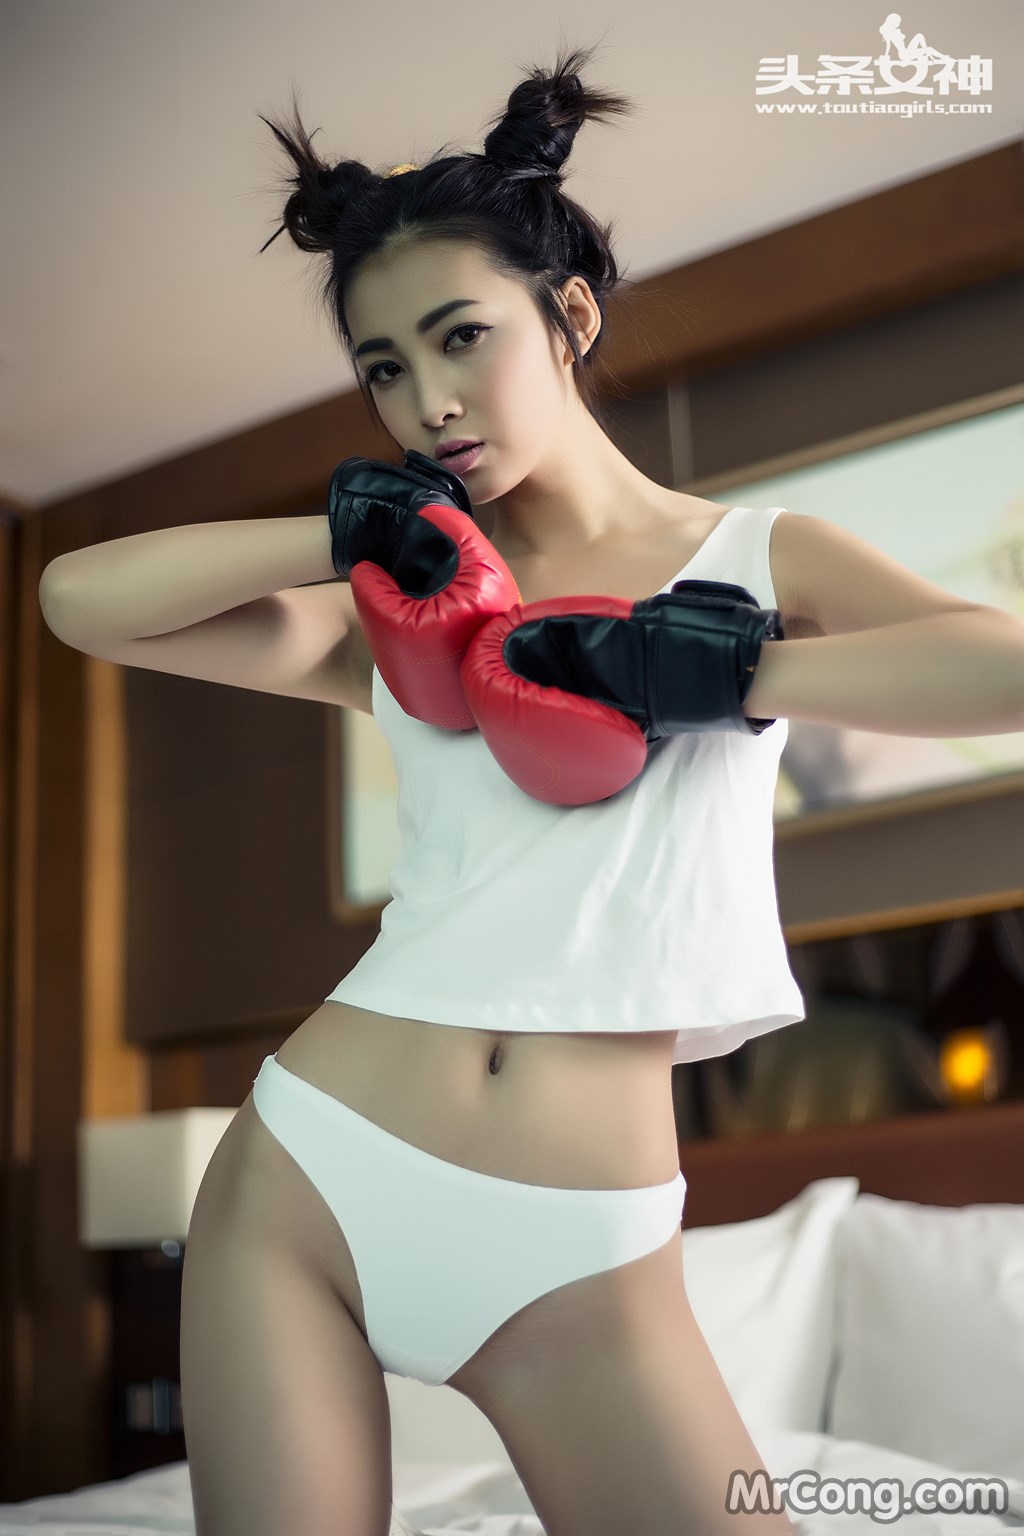 TouTiao 2016-06-27: Model Zhang Shuang (张 爽) (34 photos)